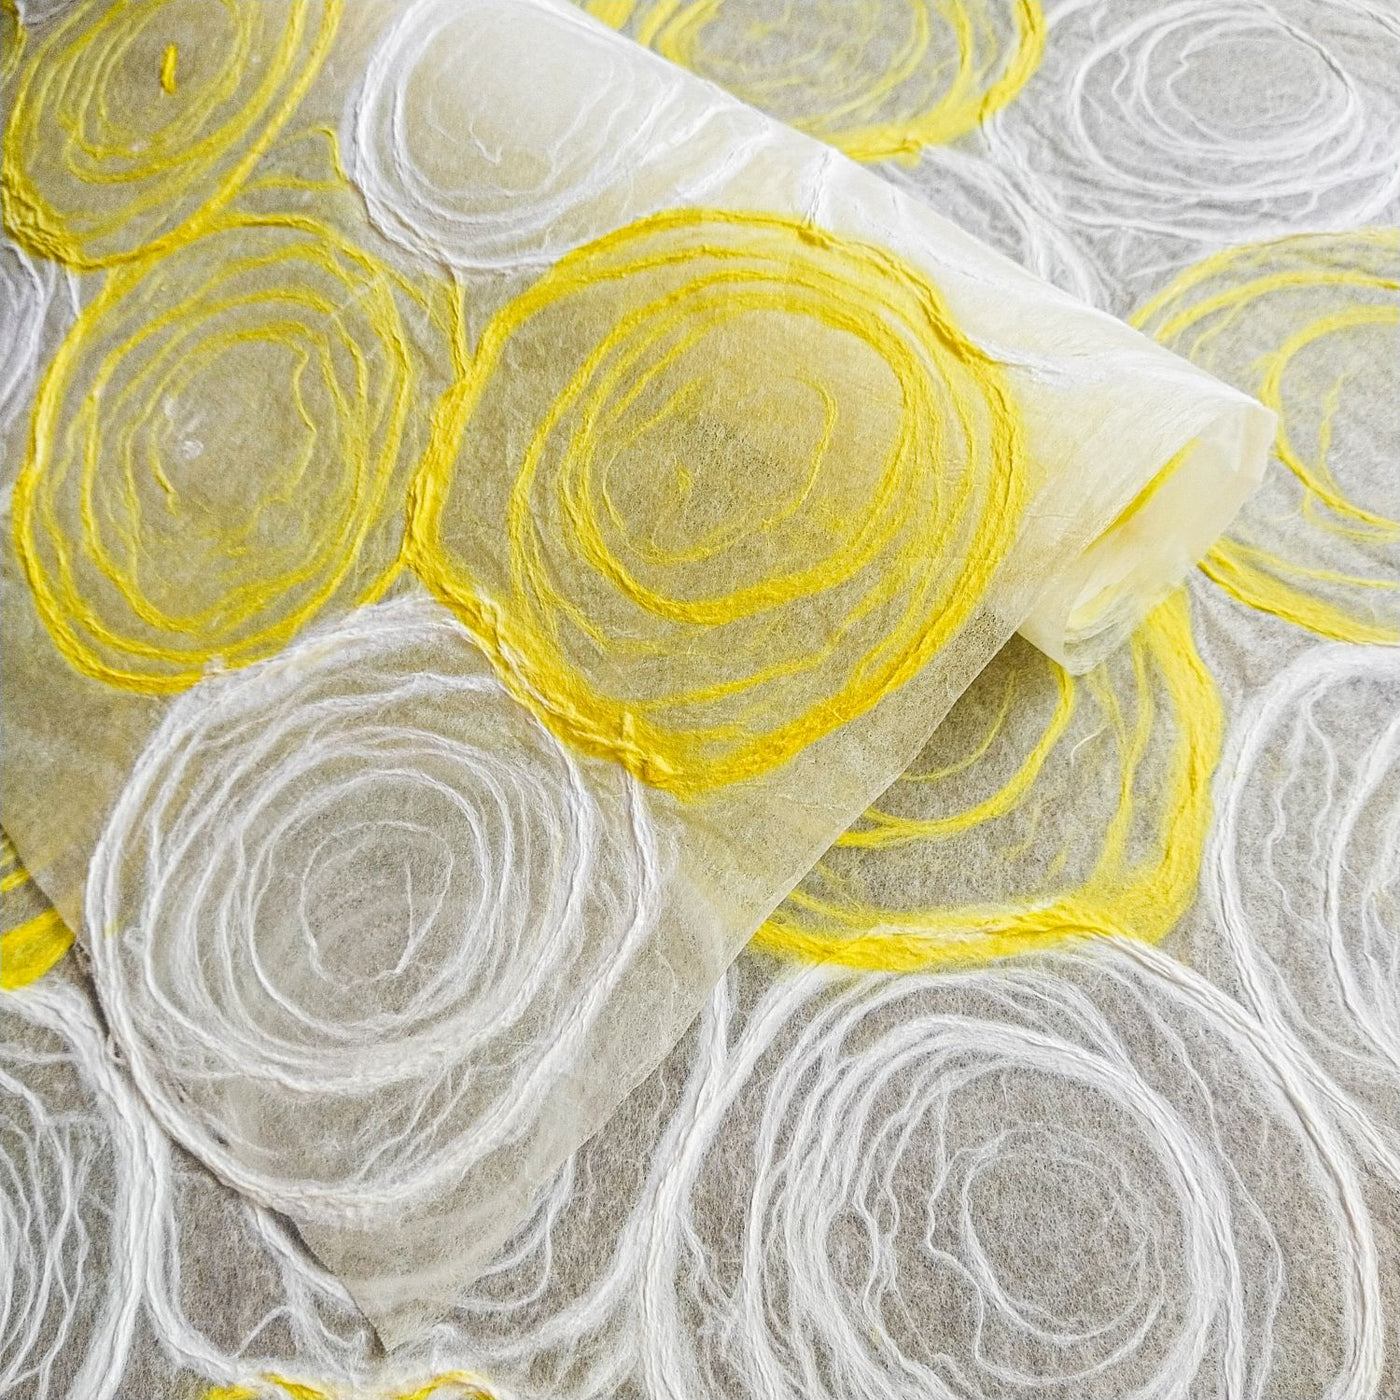 Papel Rose Kozo hecho a mano (amarillo y blanco)